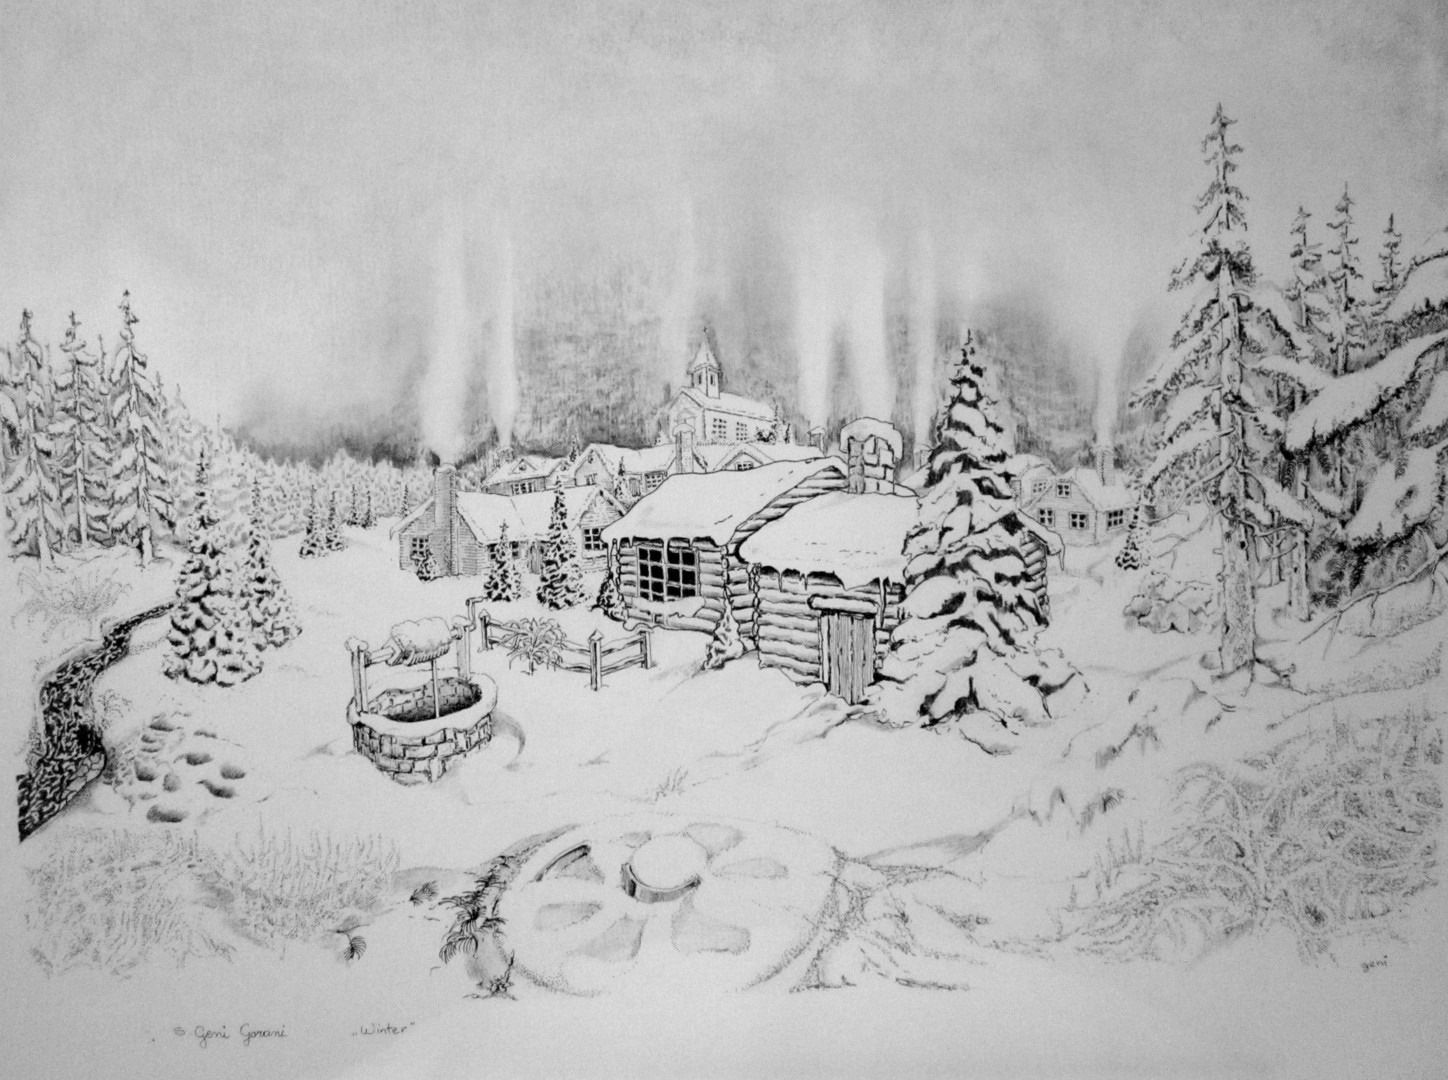 Winter, Drawing by Geni Gorani Artmajeur